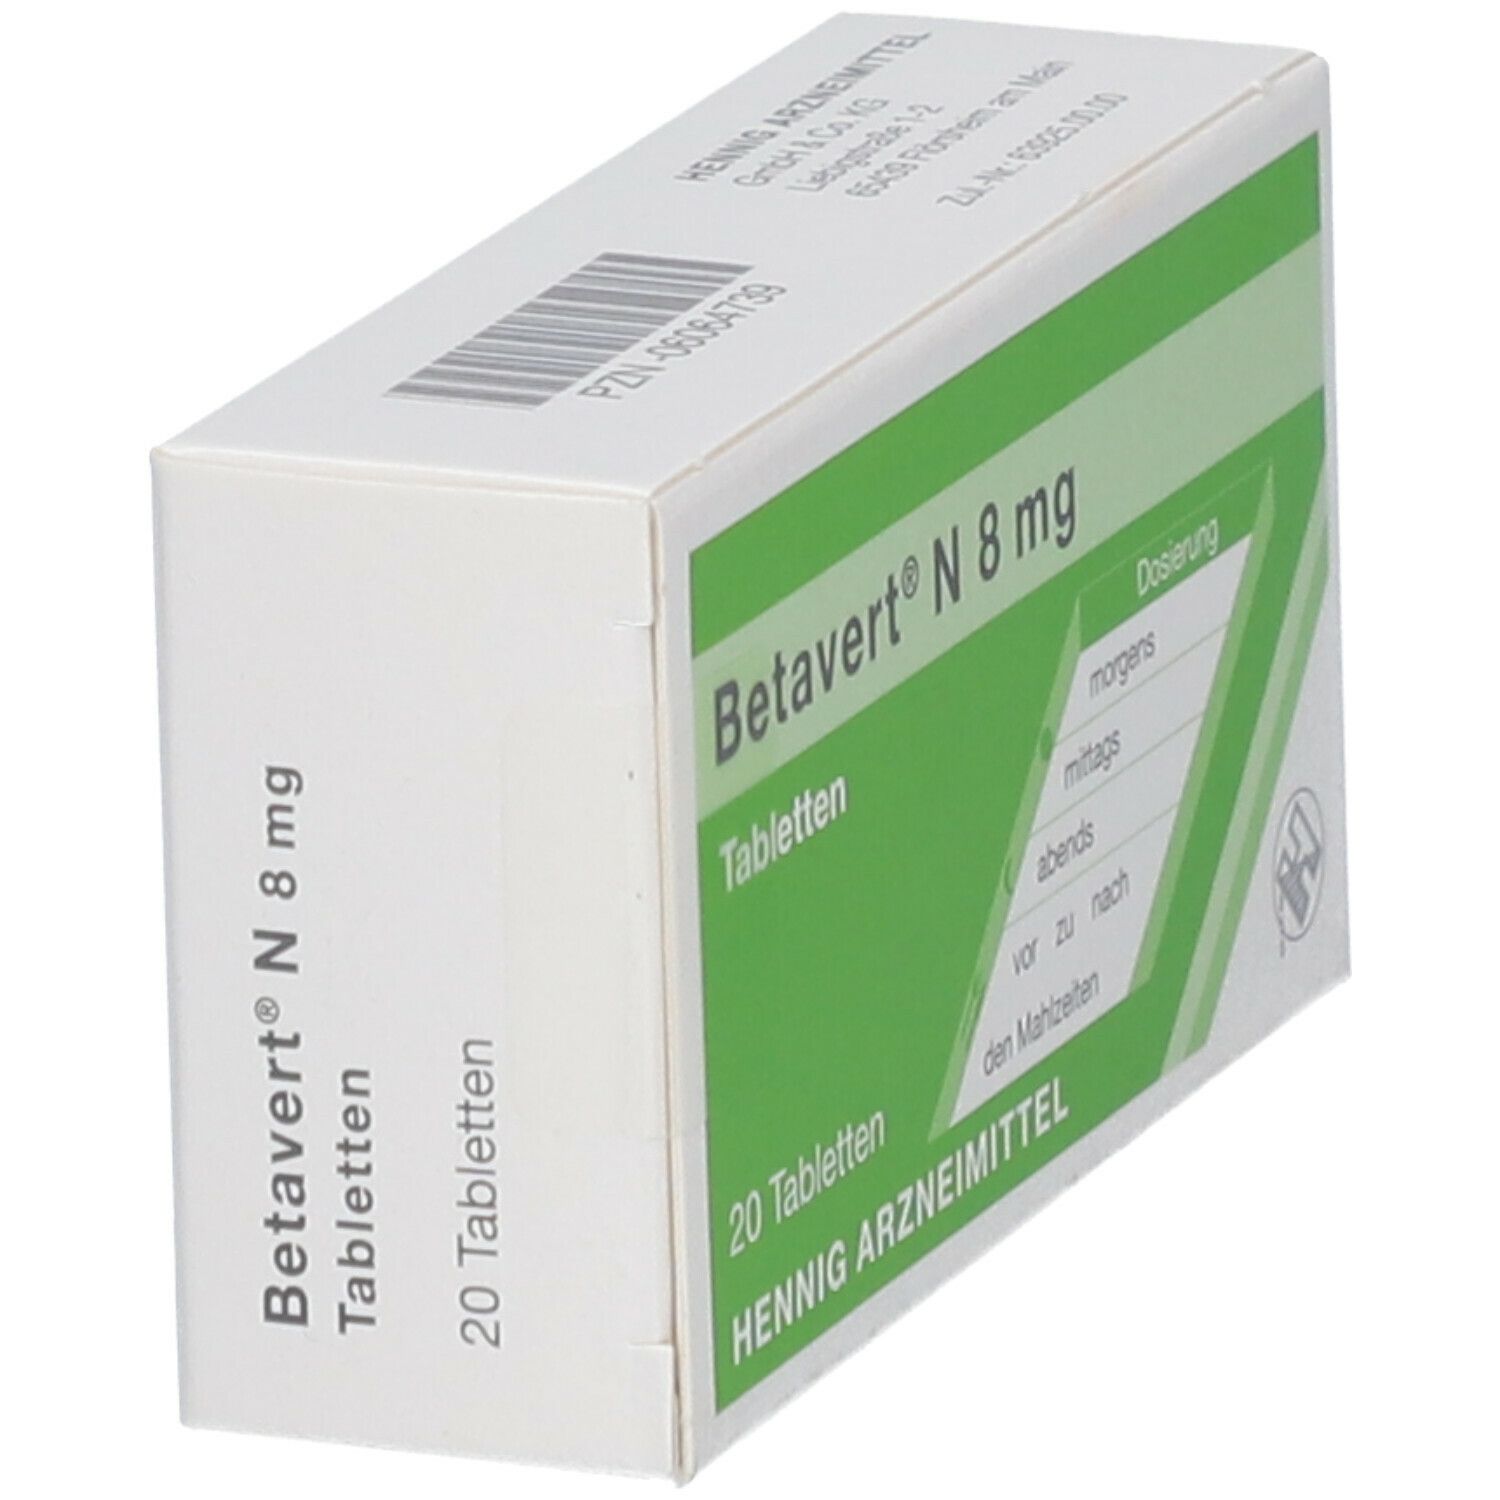 Betavert® N 8 mg